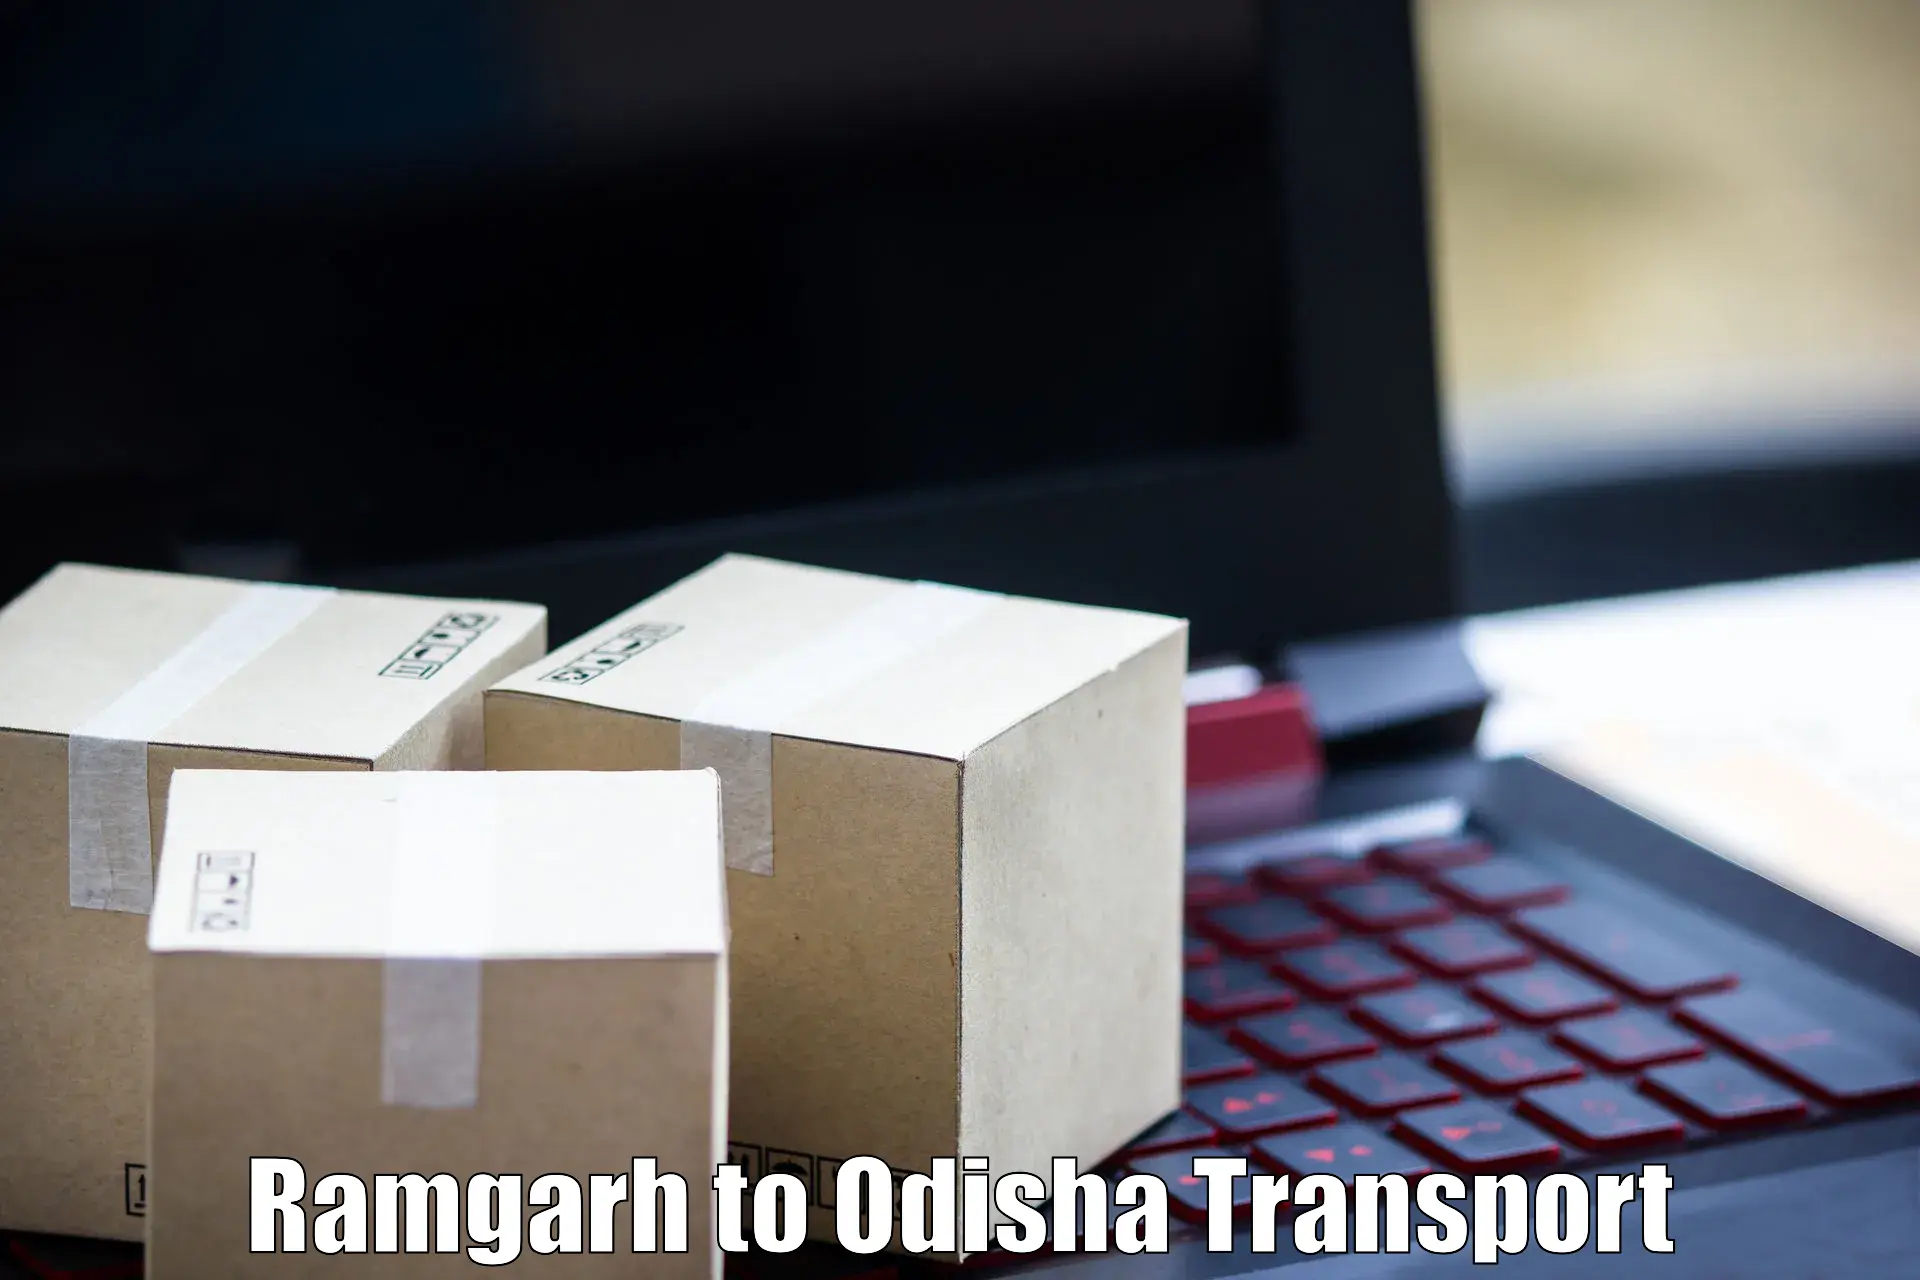 Bike transport service Ramgarh to Odisha